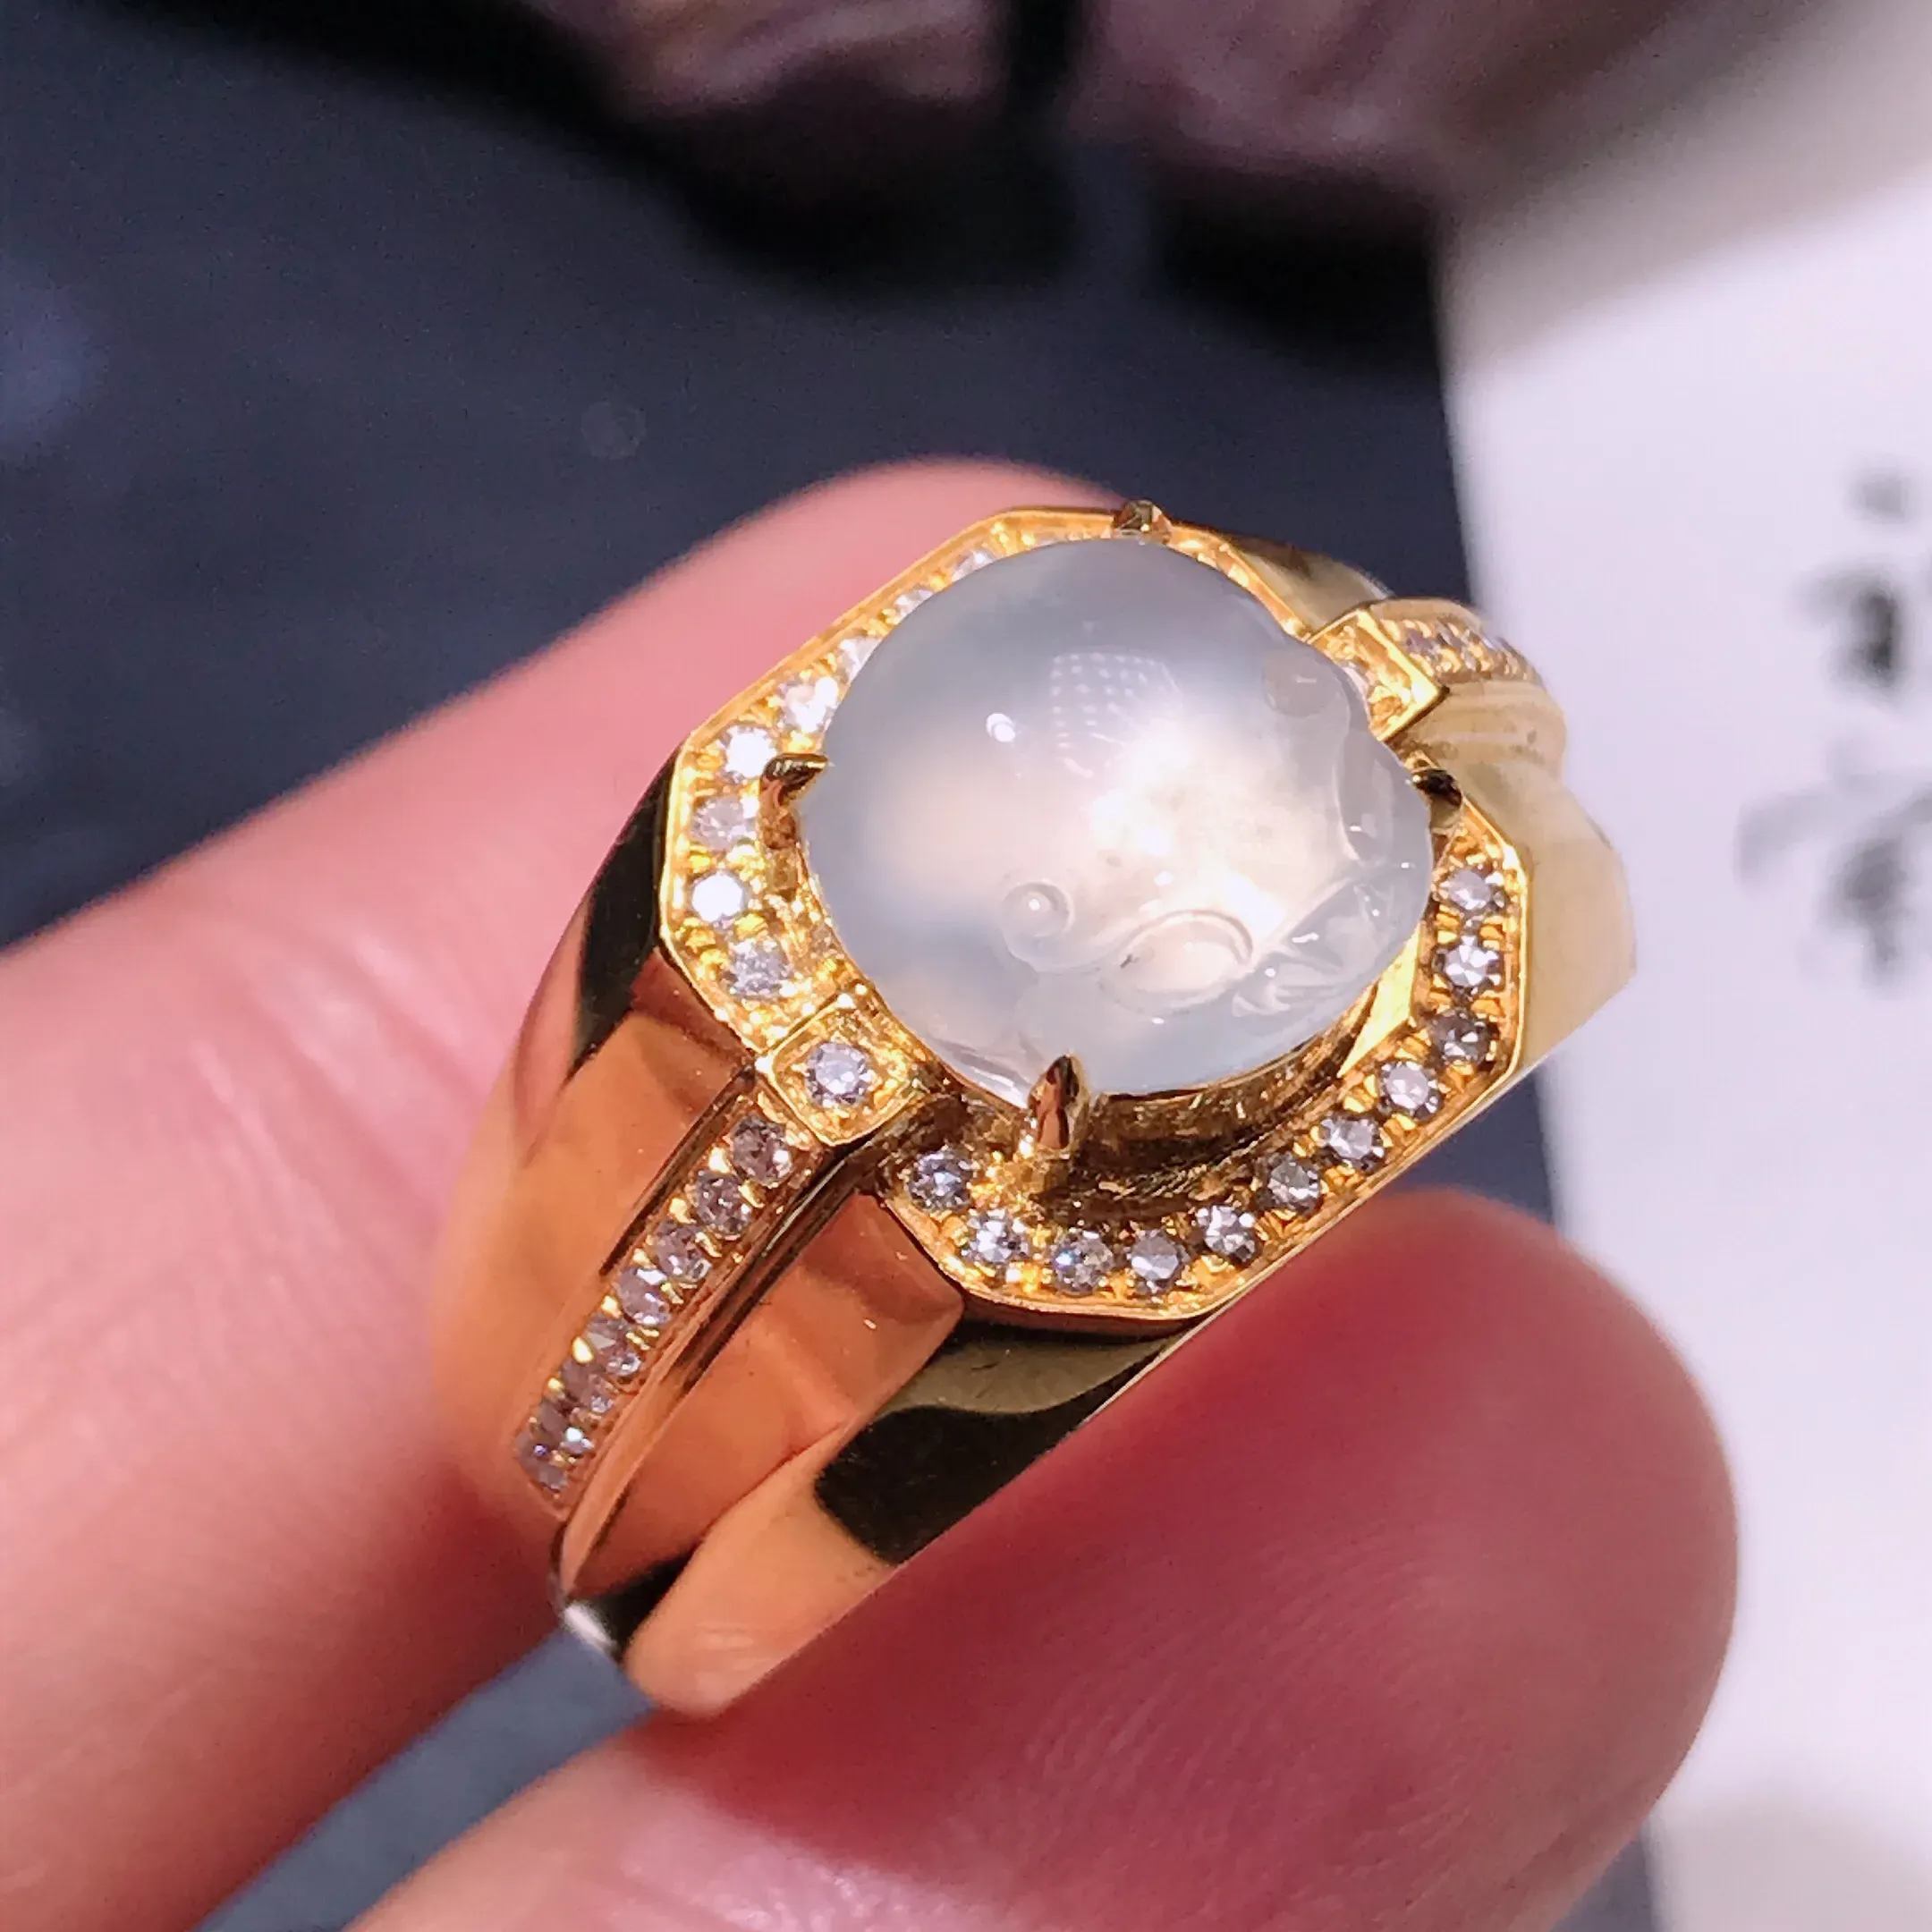 严选推荐 貔貅戒指，翡翠貔貅女戒指，18k金钻镶嵌而成，品相佳，佩戴效果出众，尽显气质。种水无